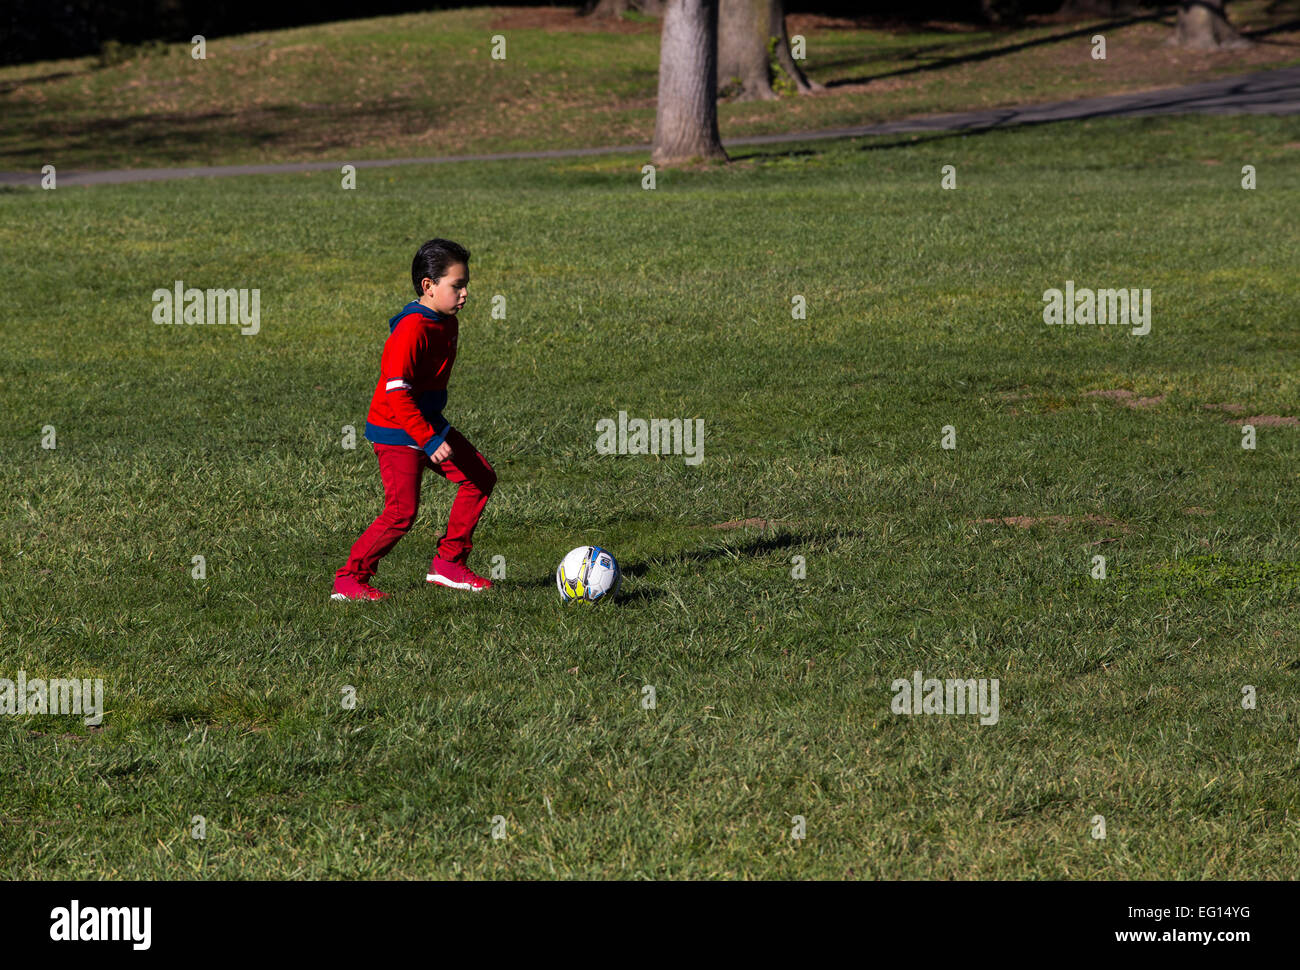 Young Hispanic boy apprendre à jouer au soccer à coups de ballon de soccer tout en jouant au football dans la région de Pioneer Park dans la ville de Novato, Californie Banque D'Images